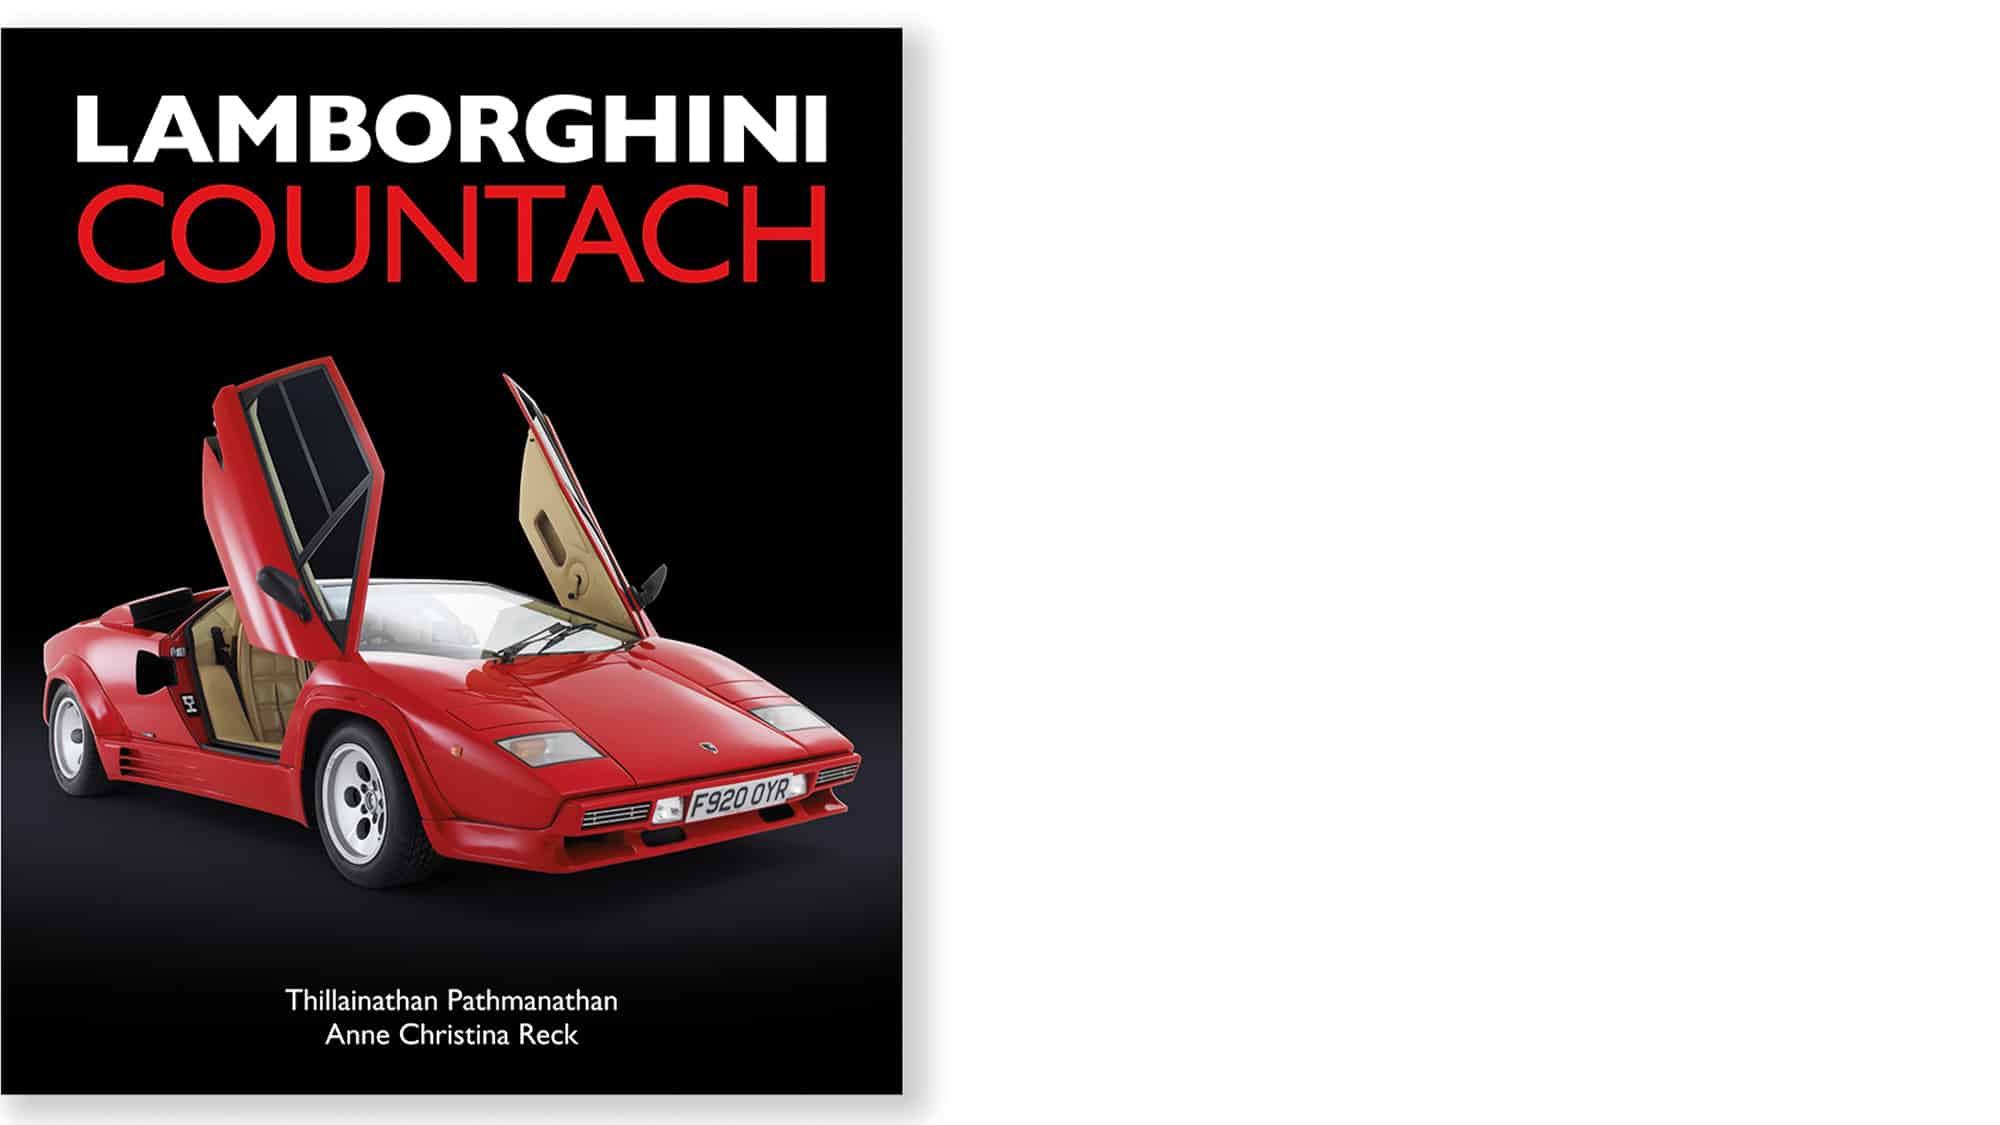 Lamborghini Countach book